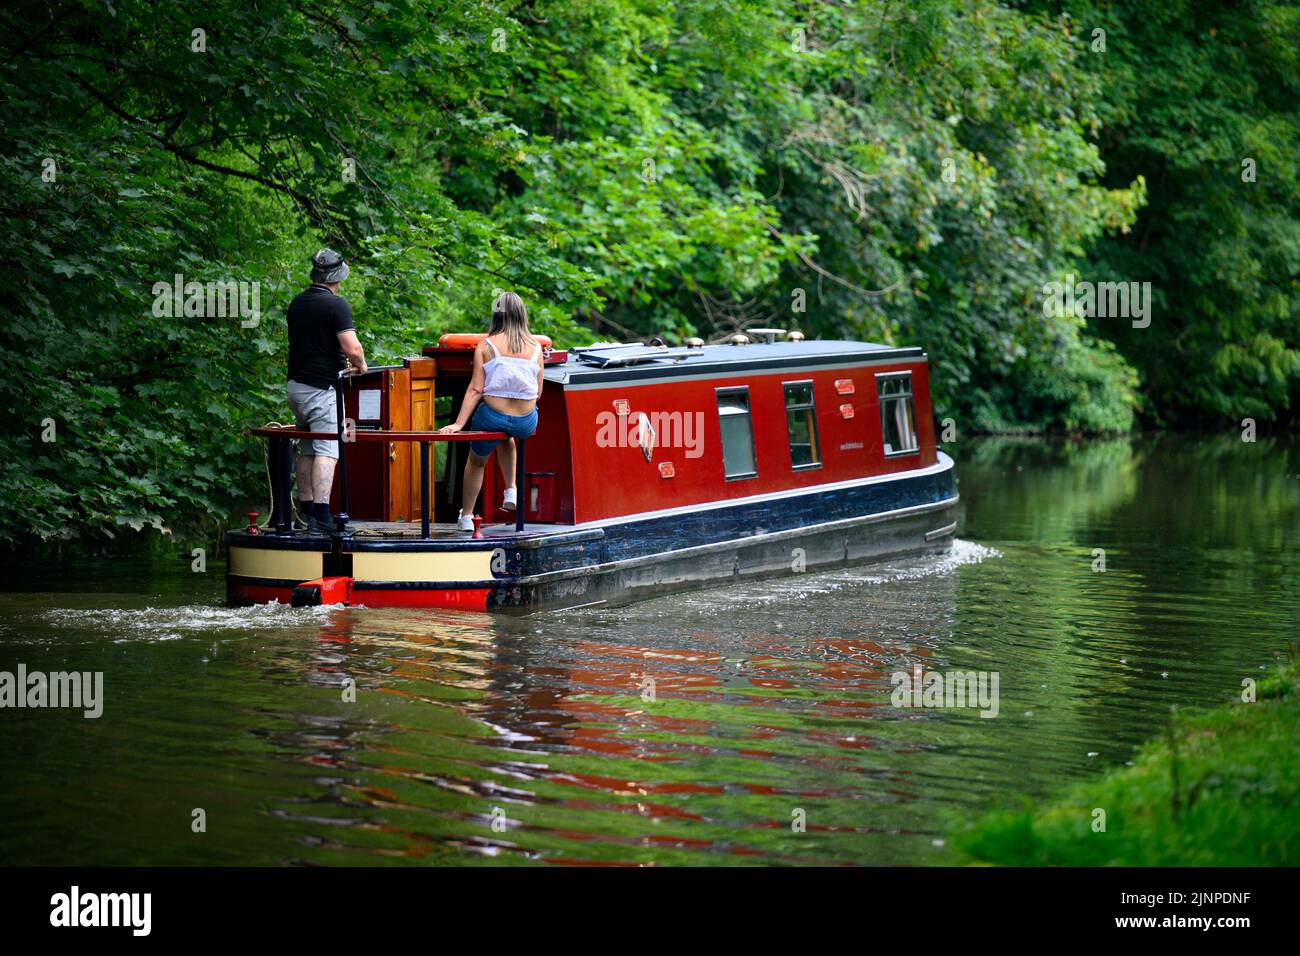 Una pareja que se relaja en un barco estrecho de estilo crucero rojo que se desplaza lentamente a lo largo del pintoresco y tranquilo canal rural de Leeds Liverpool - Bingley, West Yorkshire, Inglaterra, Reino Unido. Foto de stock